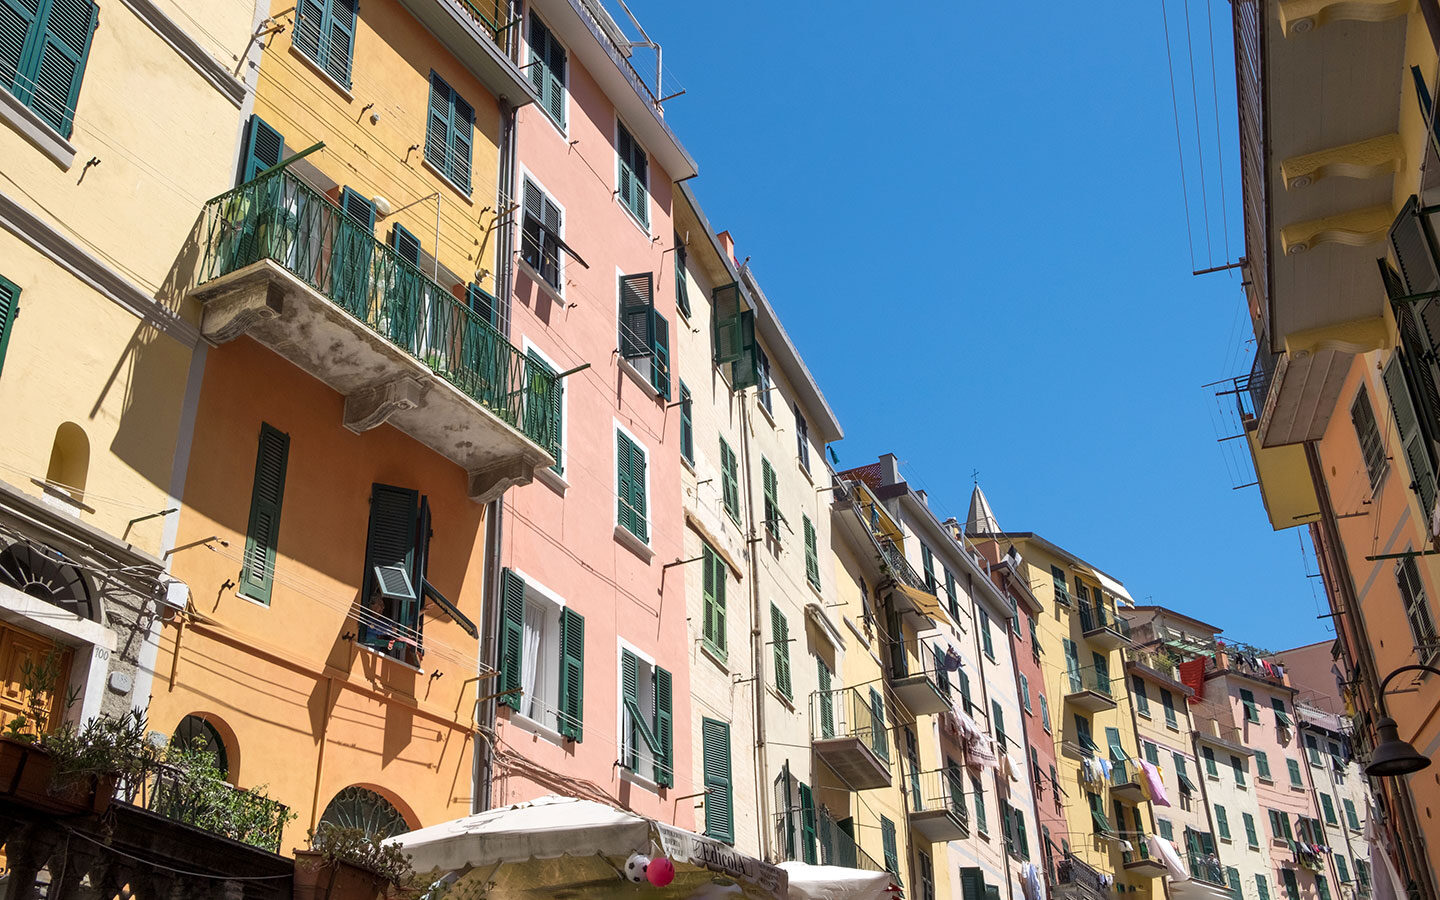 Colourful buildings in Riomaggiore in the Cinque Terre